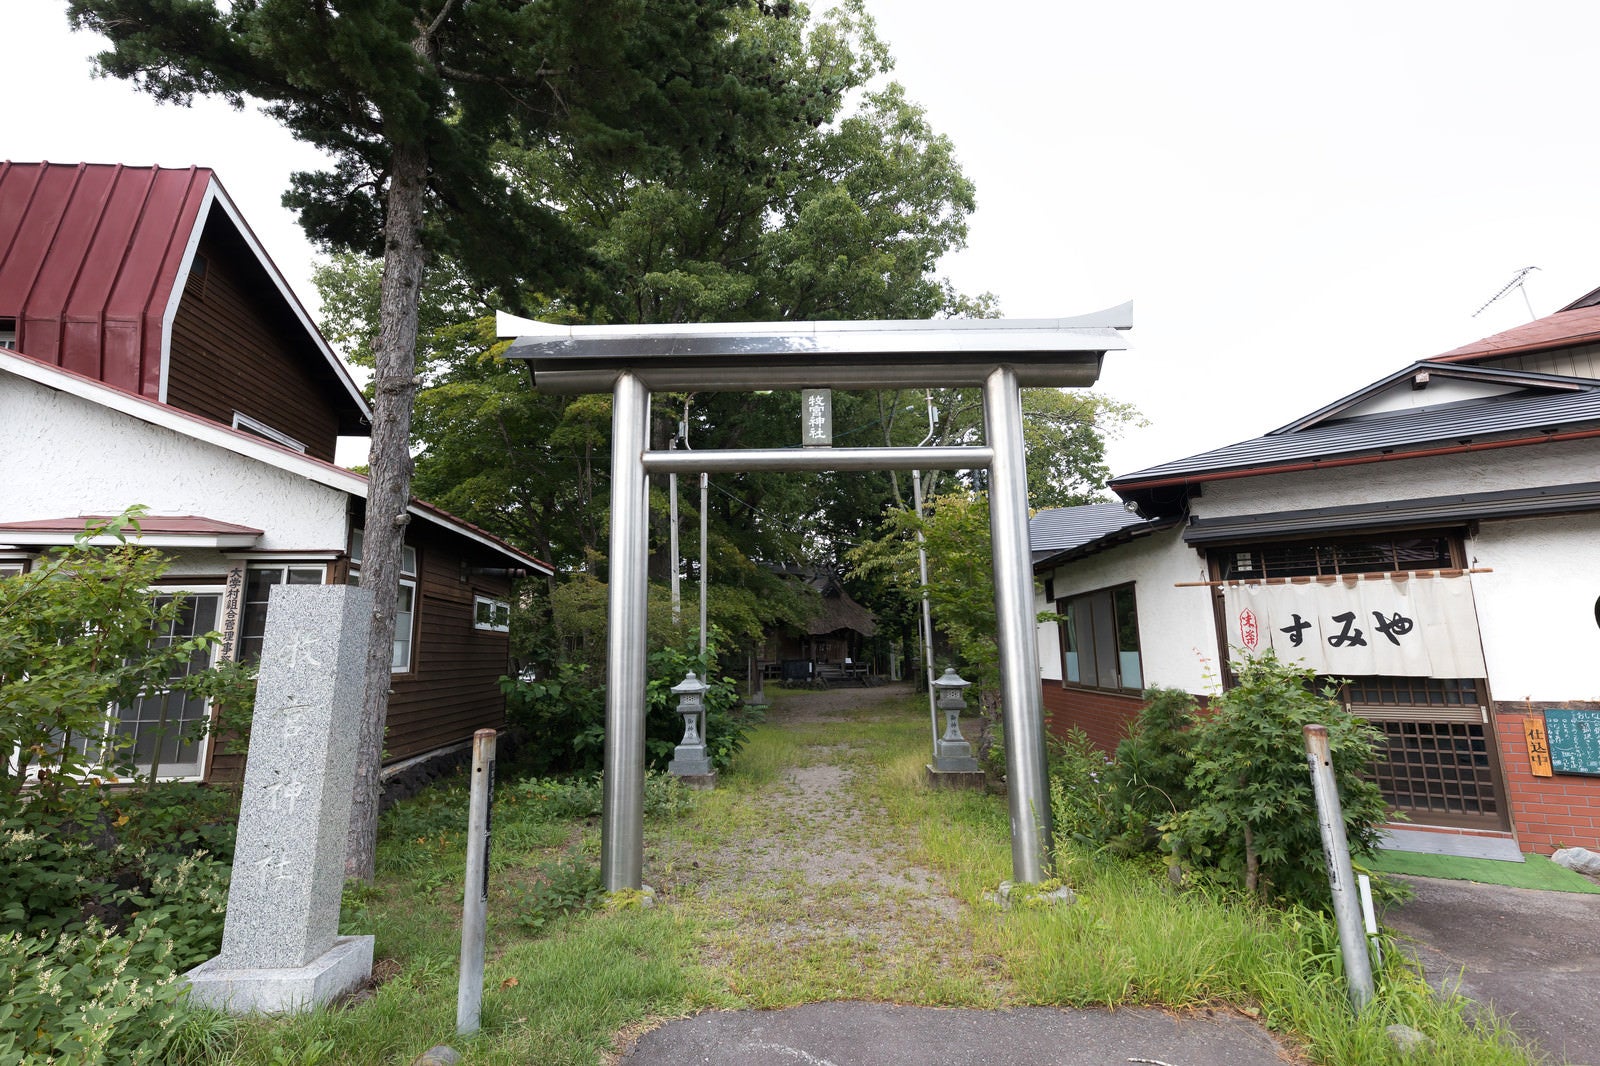 「北軽井沢駅近くの牧宮神社の鳥居」の写真